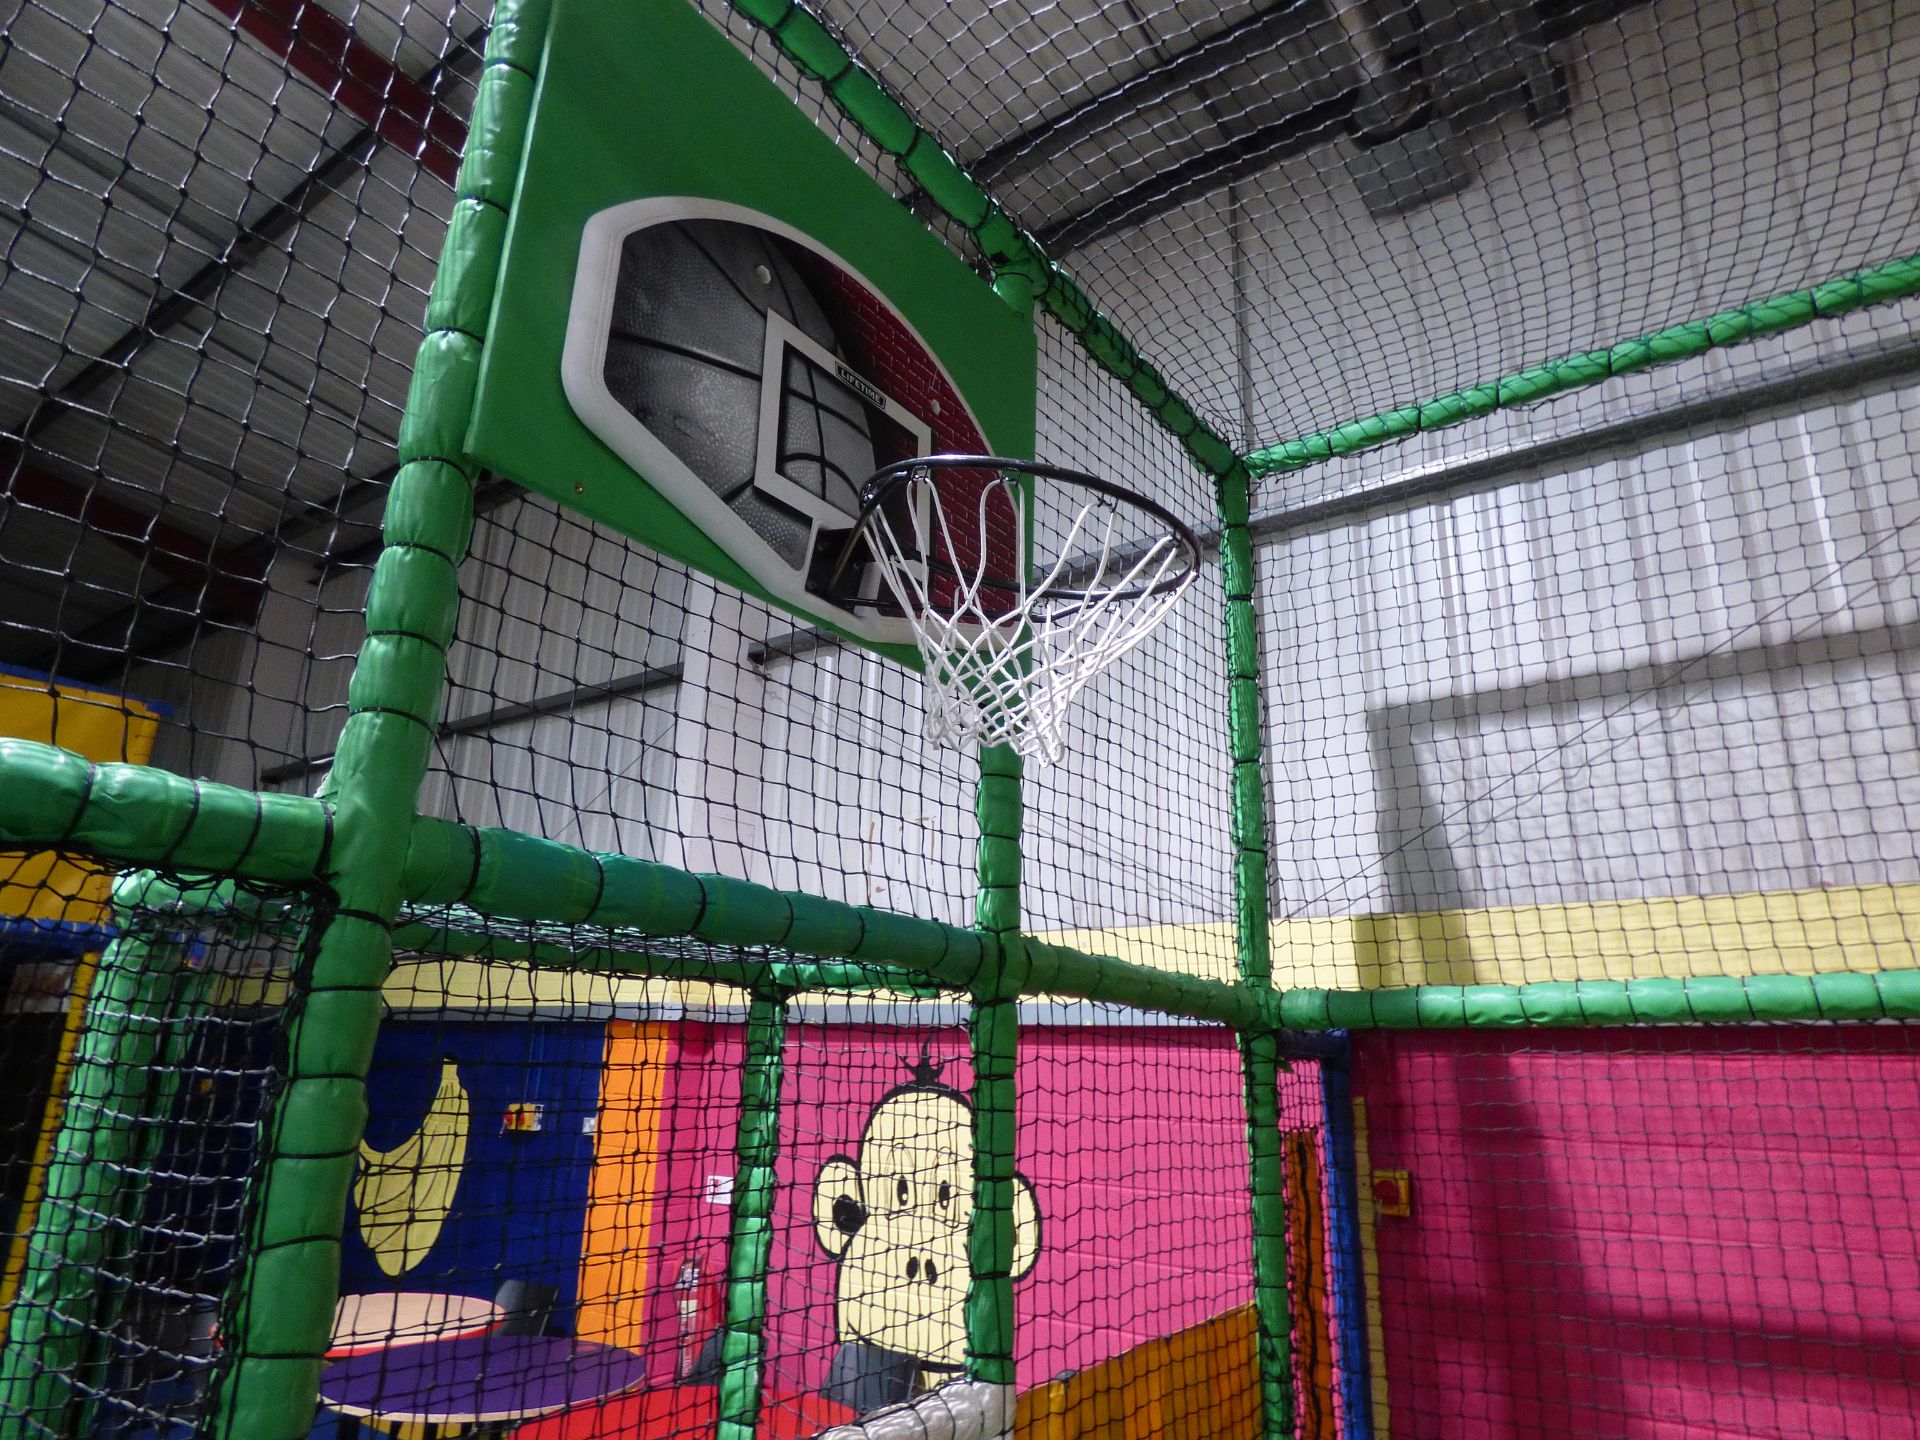 Football/Netball (Basketball) Court Area - Image 8 of 8